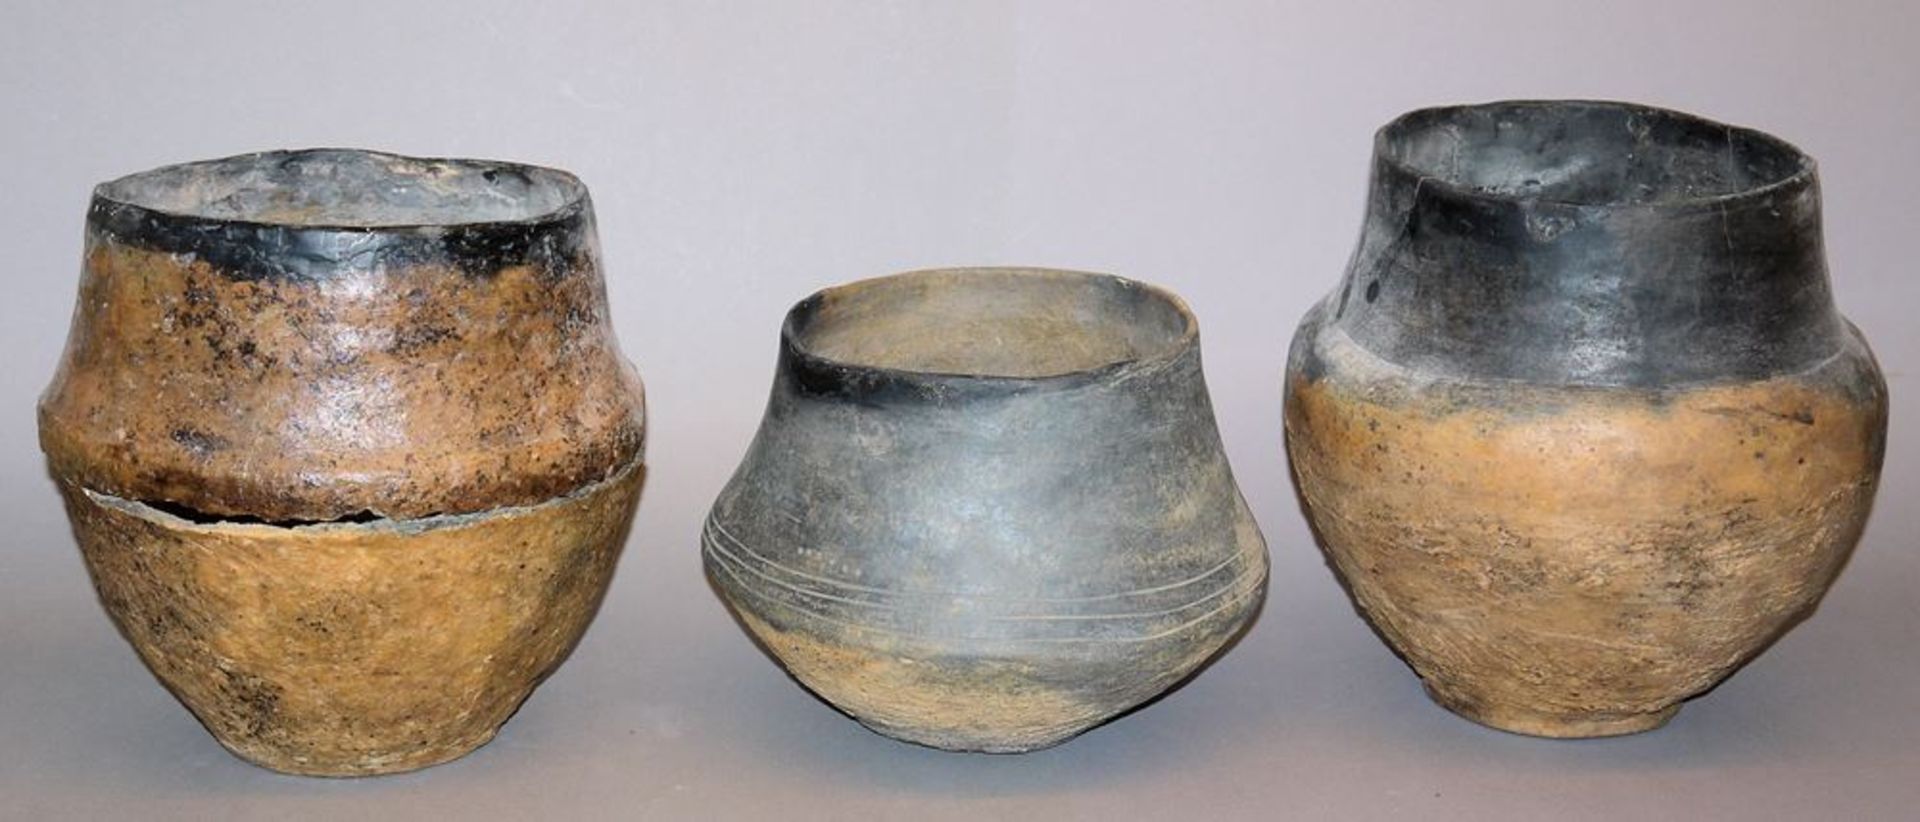 Drei Urnen, Lausitzer Kultur, 9.-5. Jh. v. Chr., mit Rechnung